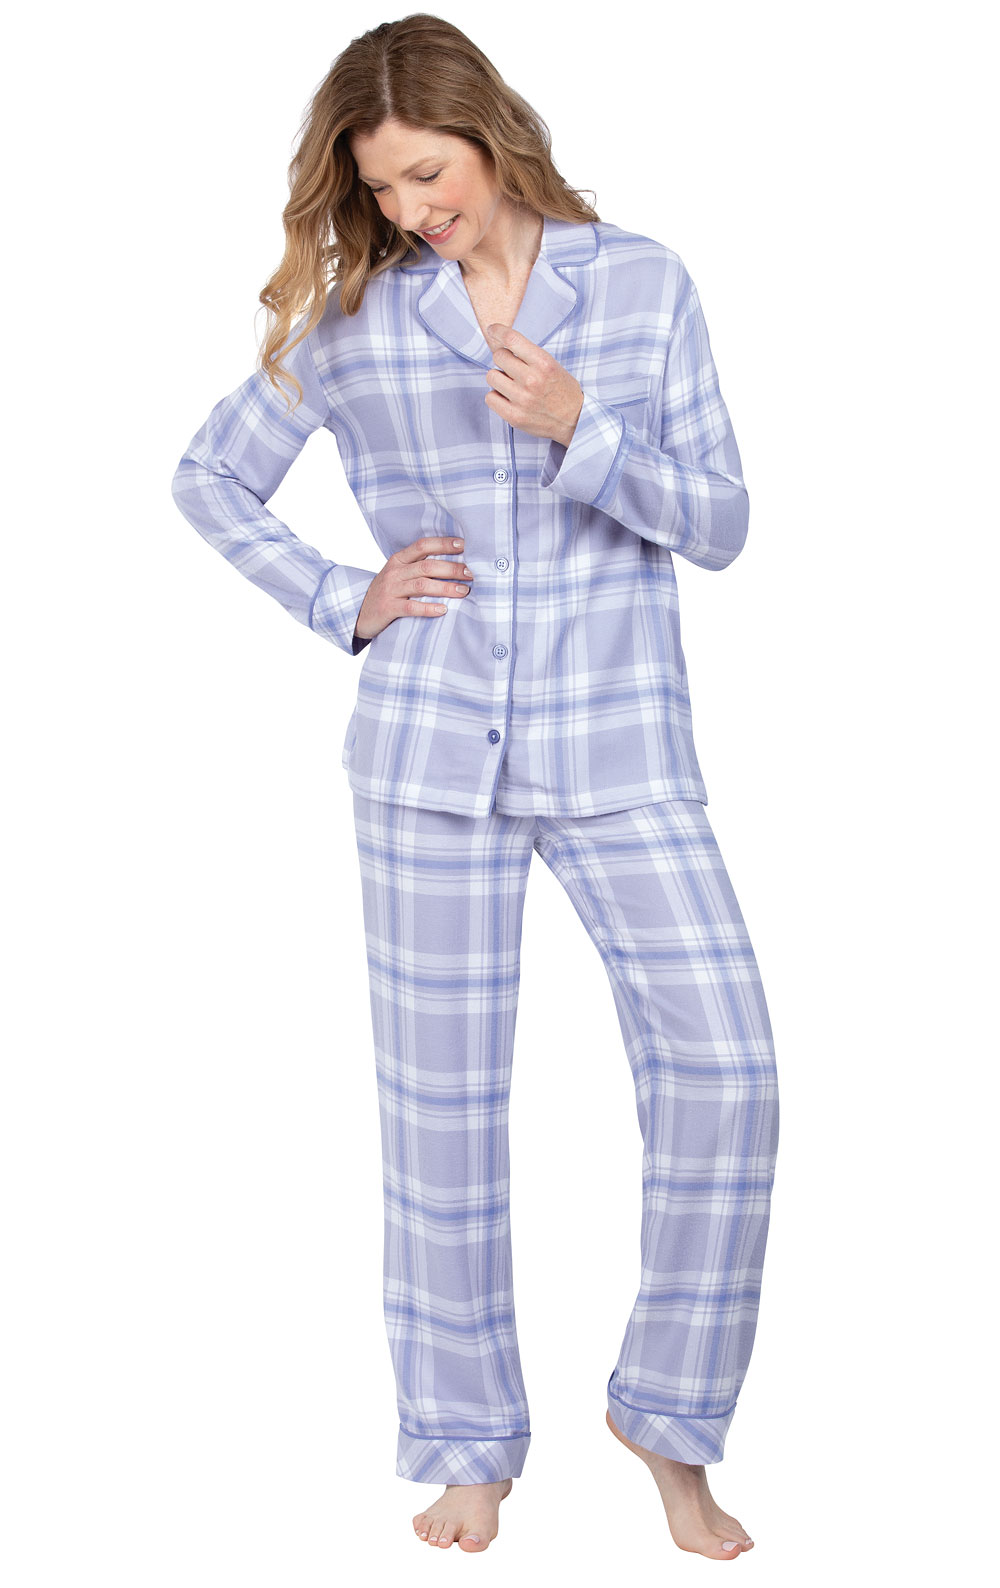 Womens Flannel Pajamas Sets PajamaGram Pajamas for Women Soft